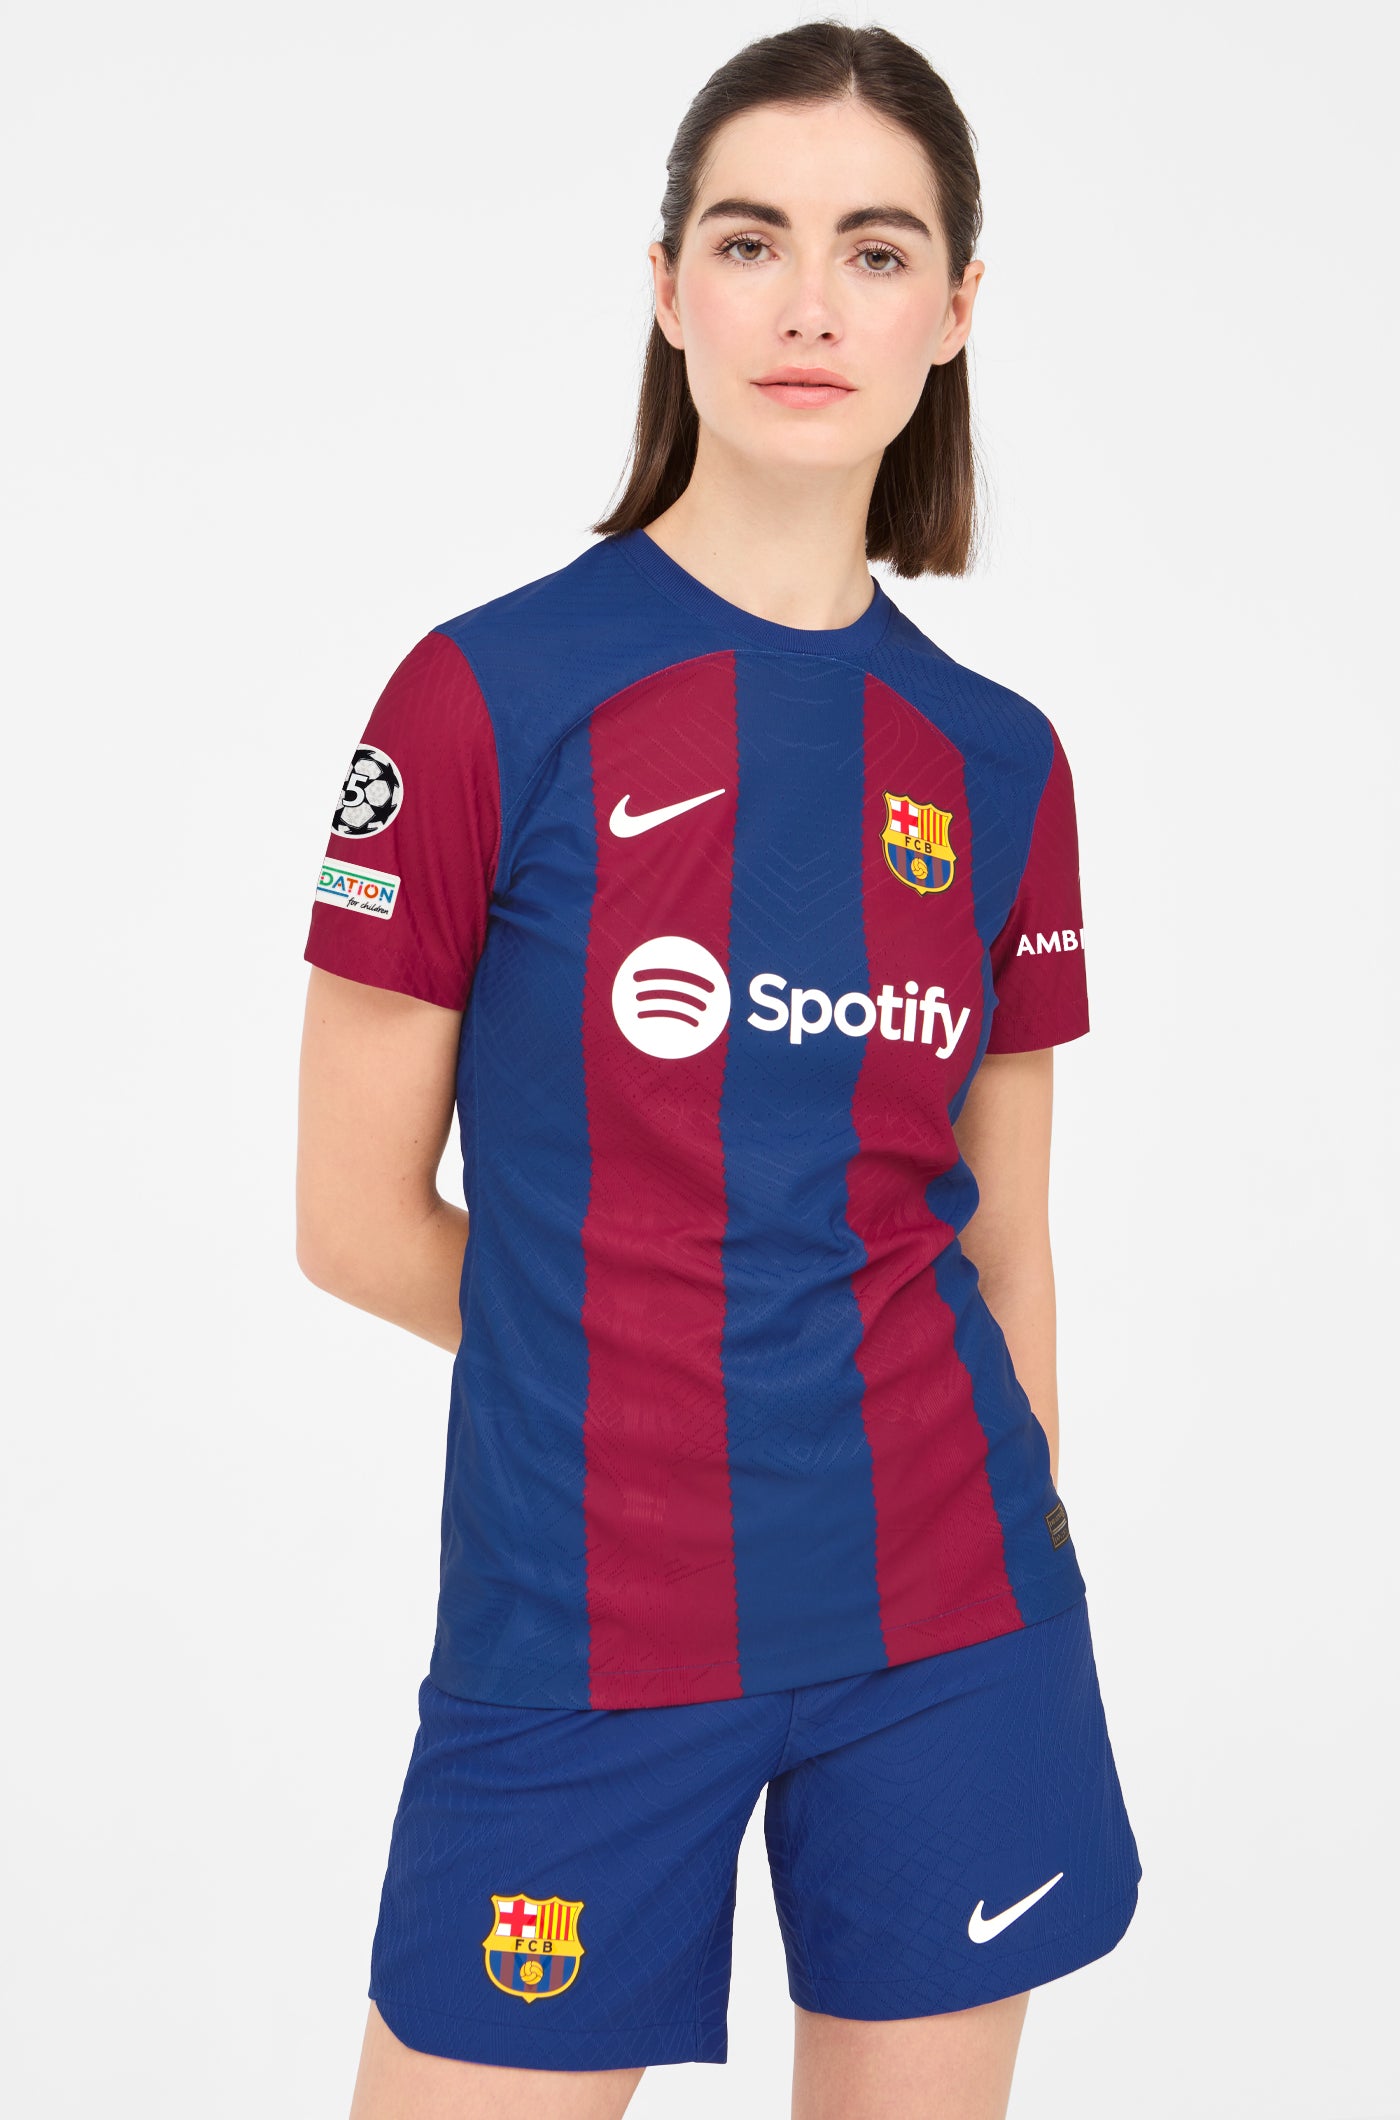 UCL FC Barcelona Home Shirt 23/24 Player's Edition - Women - FERMÍN